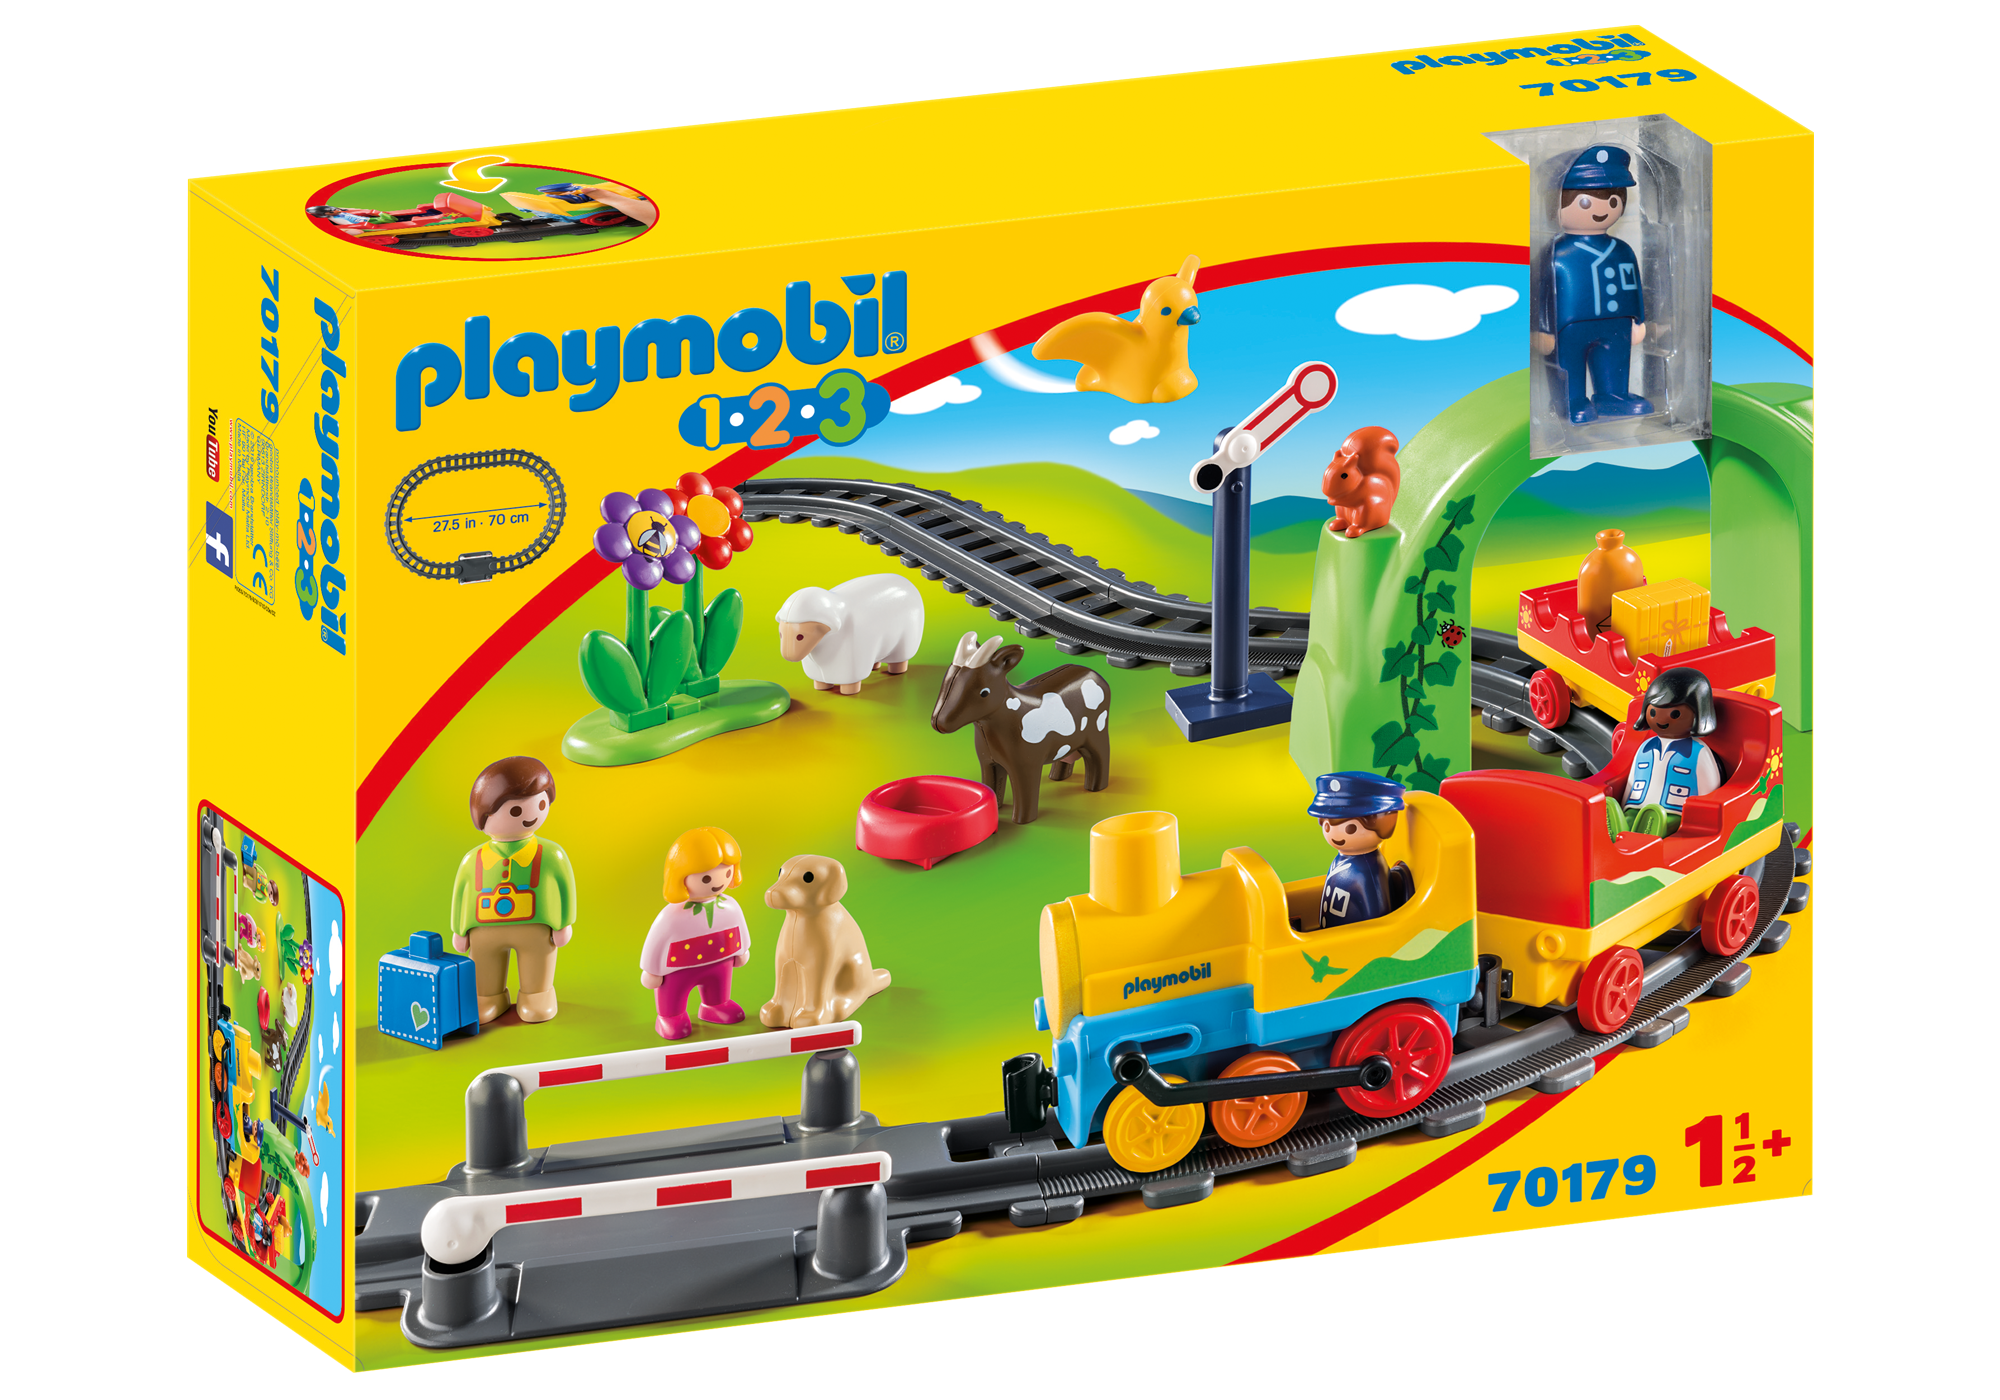 playmobil girl sets